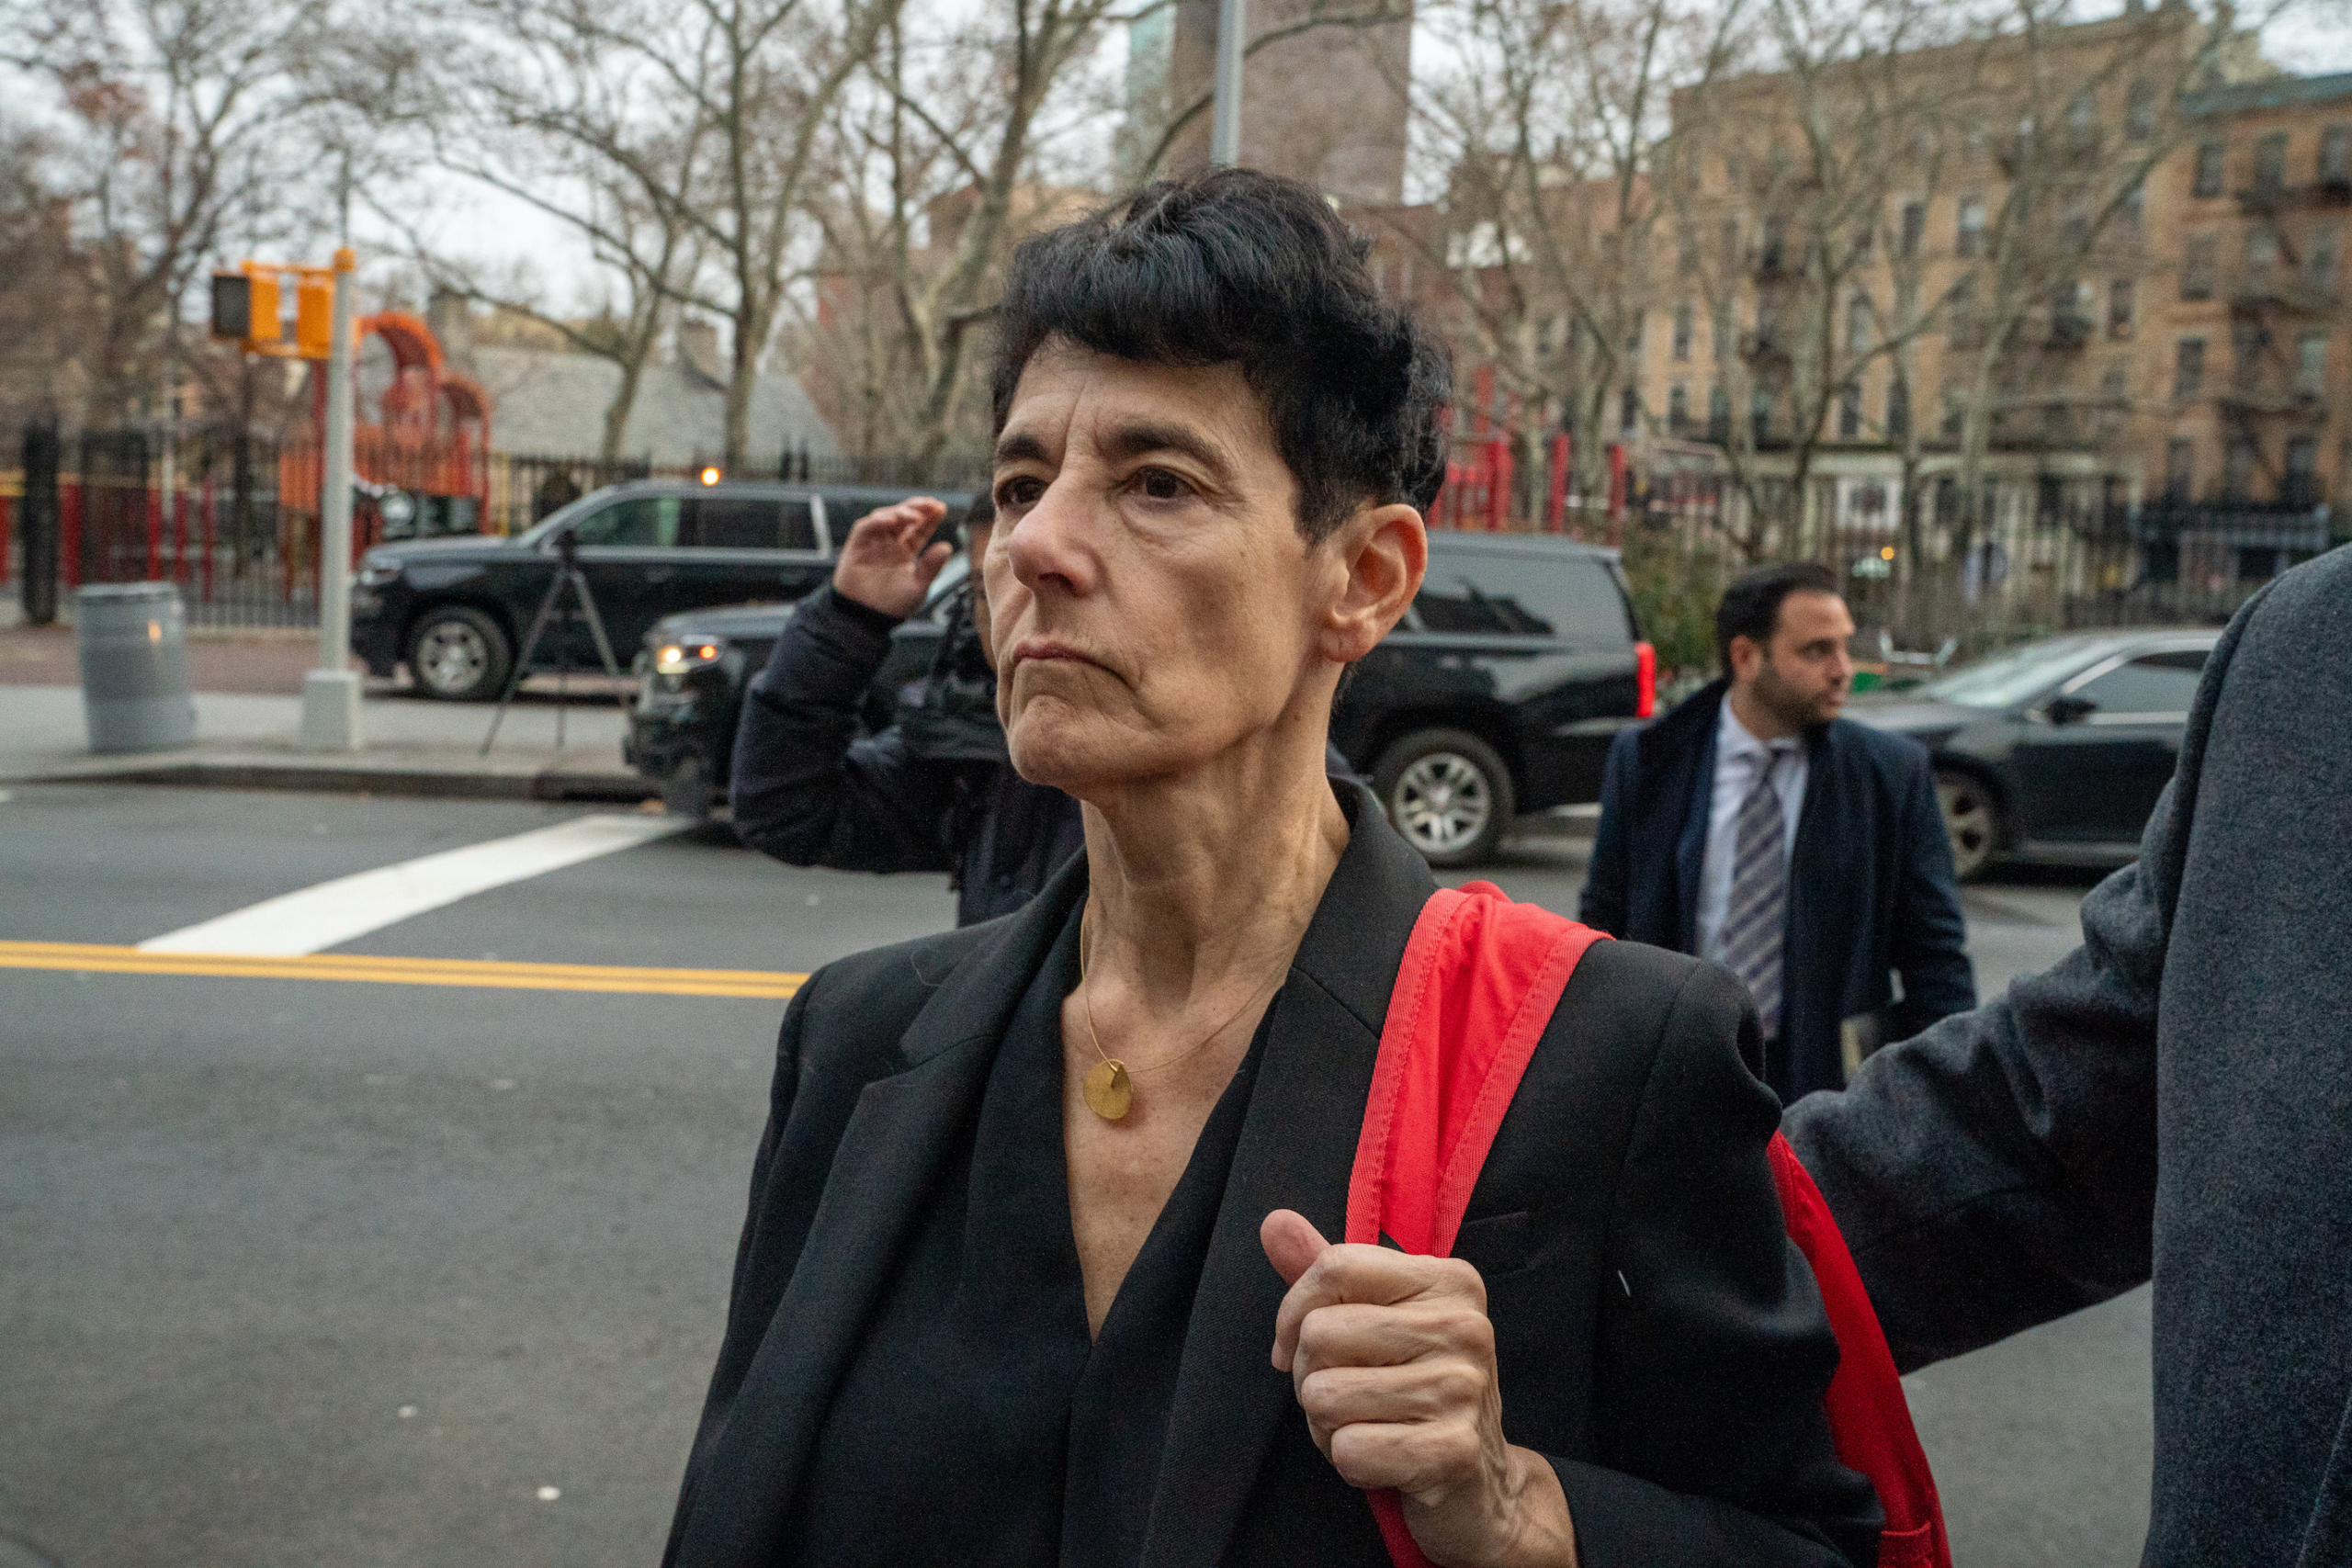 Bà Barbara Fried, mẹ của người sáng lập FTX Sam Bankman-Fried, đến dự phiên điều trần buộc tội và bảo lãnh tại Tòa án Liên bang Manhattan tại thành phố New York hôm 22/12/2022. (Ảnh: David Dee Delgado/Getty Images)